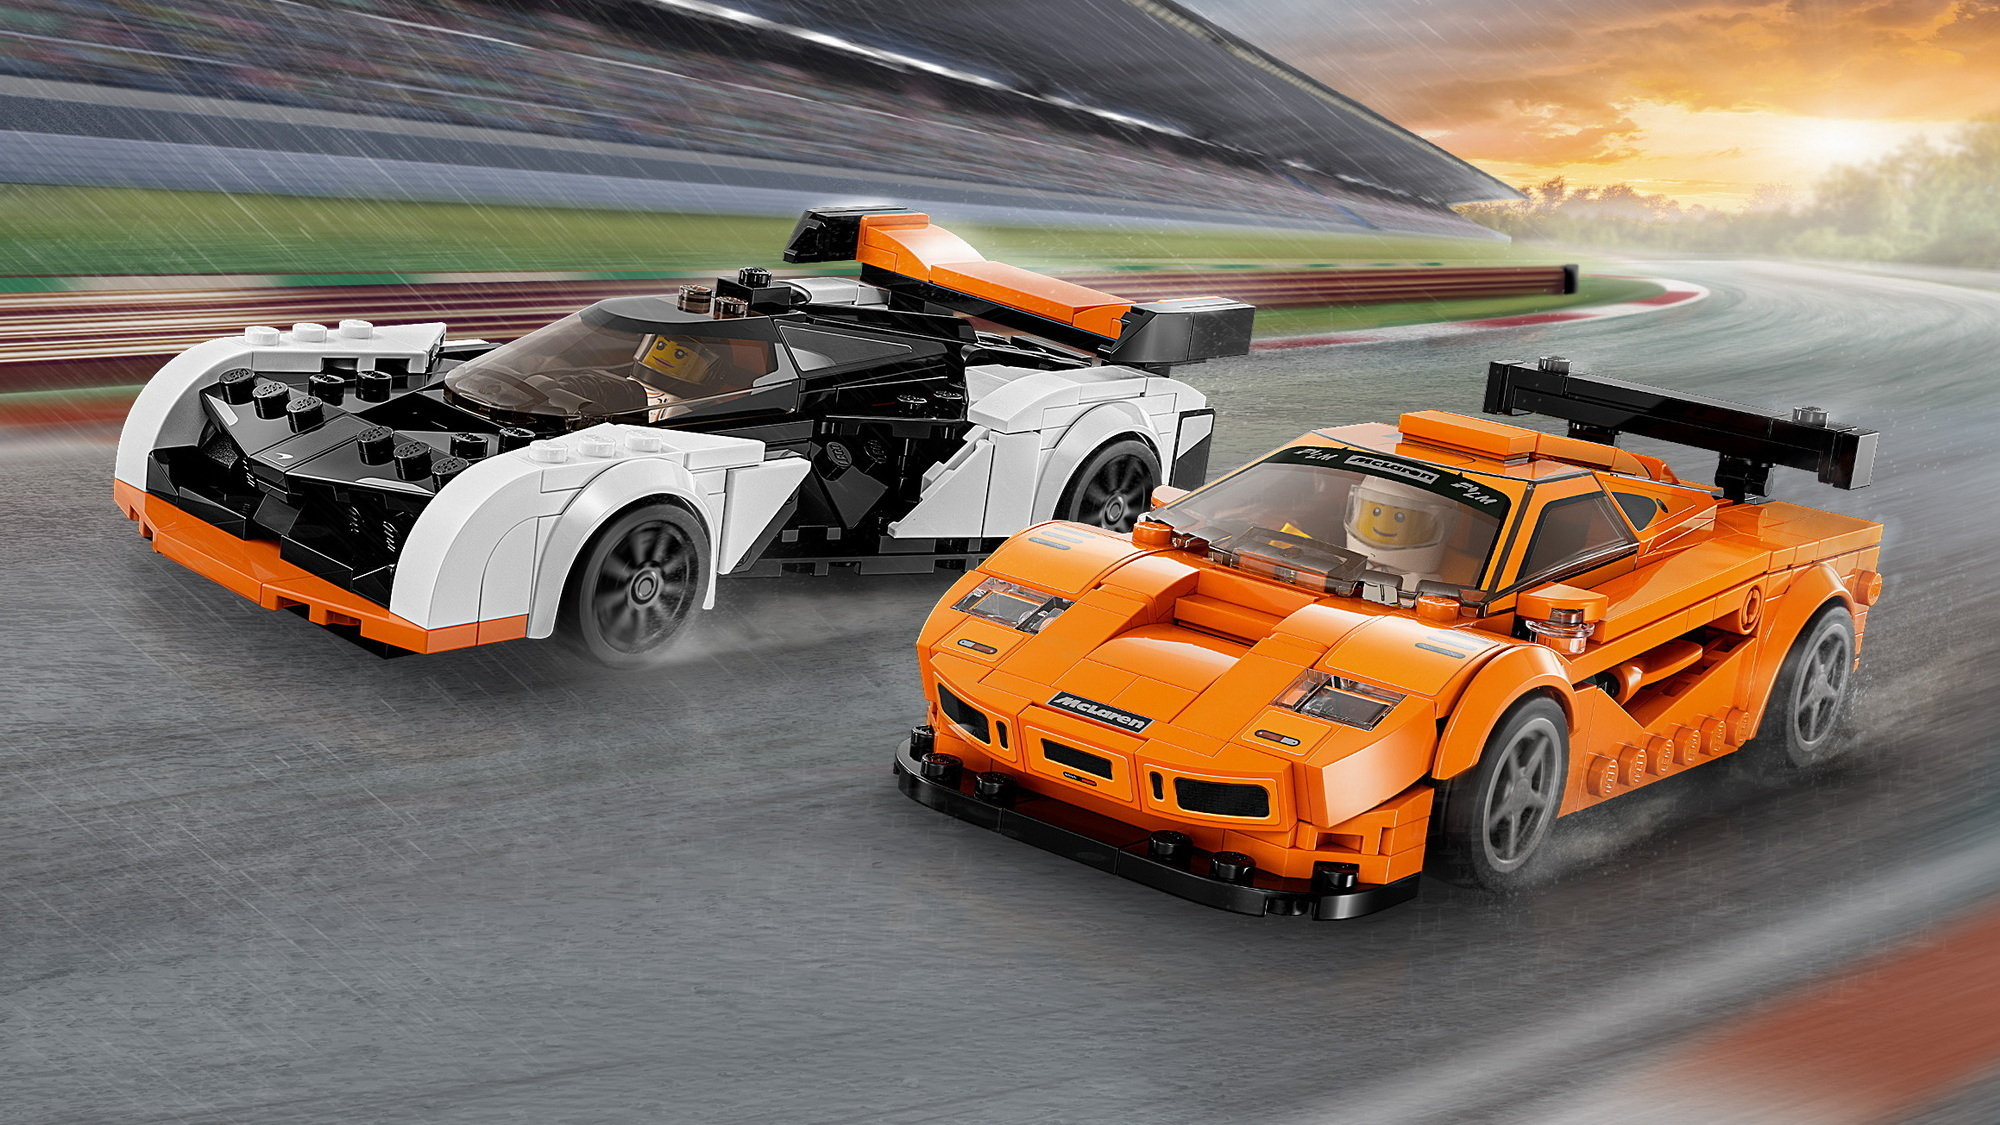 LEGO Speed Champions McLaren Solus GT & McLaren F1 LM - Moore Wilson's